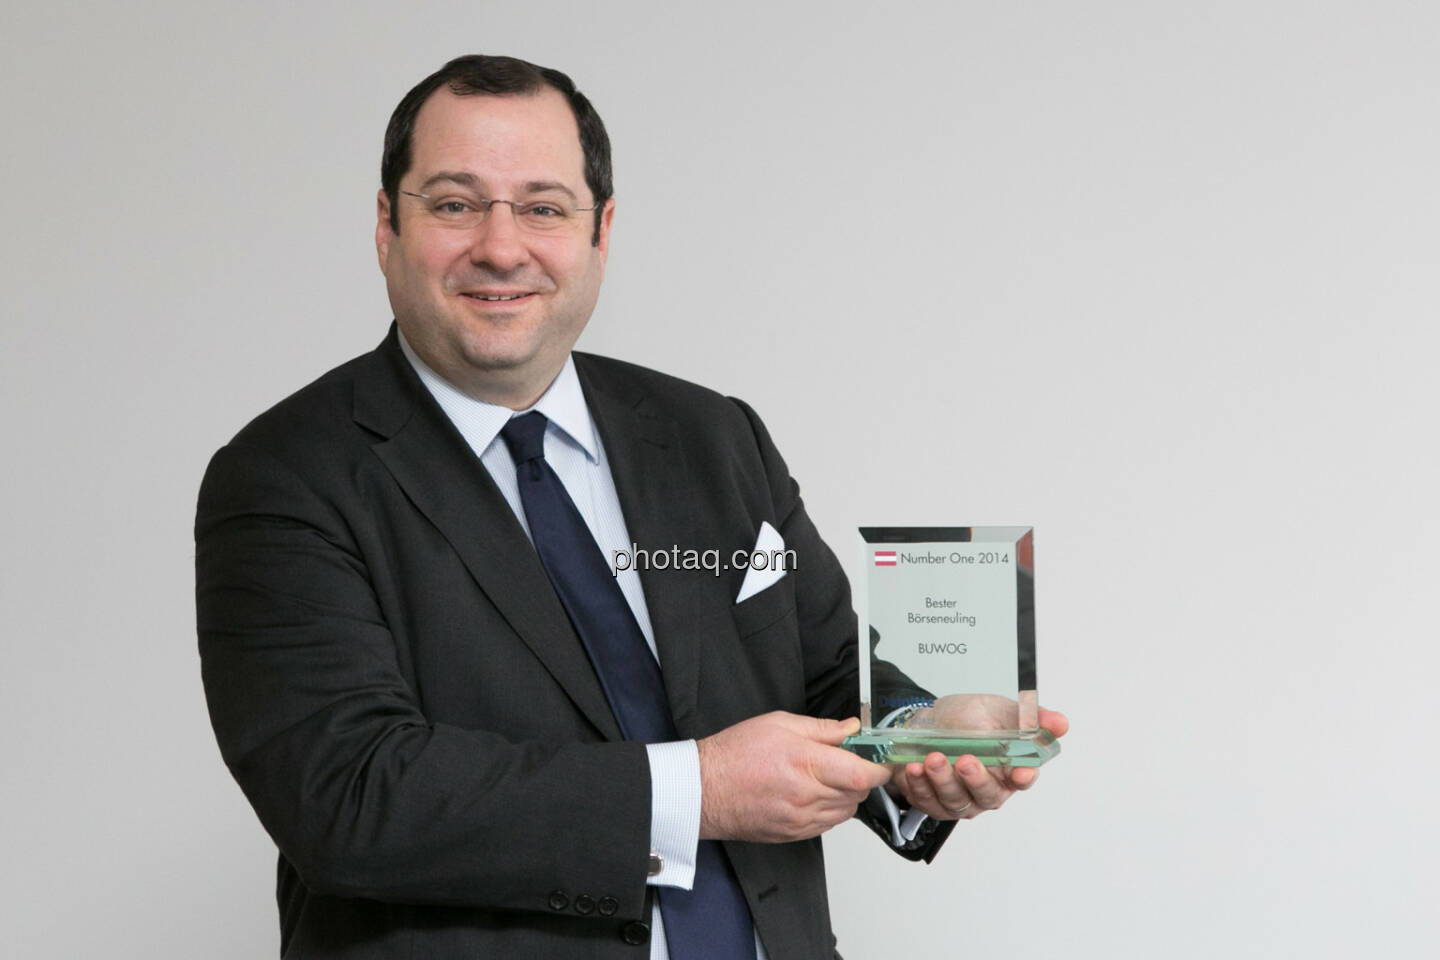 Daniel Riedl (CEO Buwog) als Börseneuling des Jahres 2014 von Deloitte und Börse Social Network ausgezeichnet. Bericht hier: http://www.christian-drastil.com/blog/2015/01/19/buwog_sieht_unseren_number_one_award_als_auftrag_fur_2015
